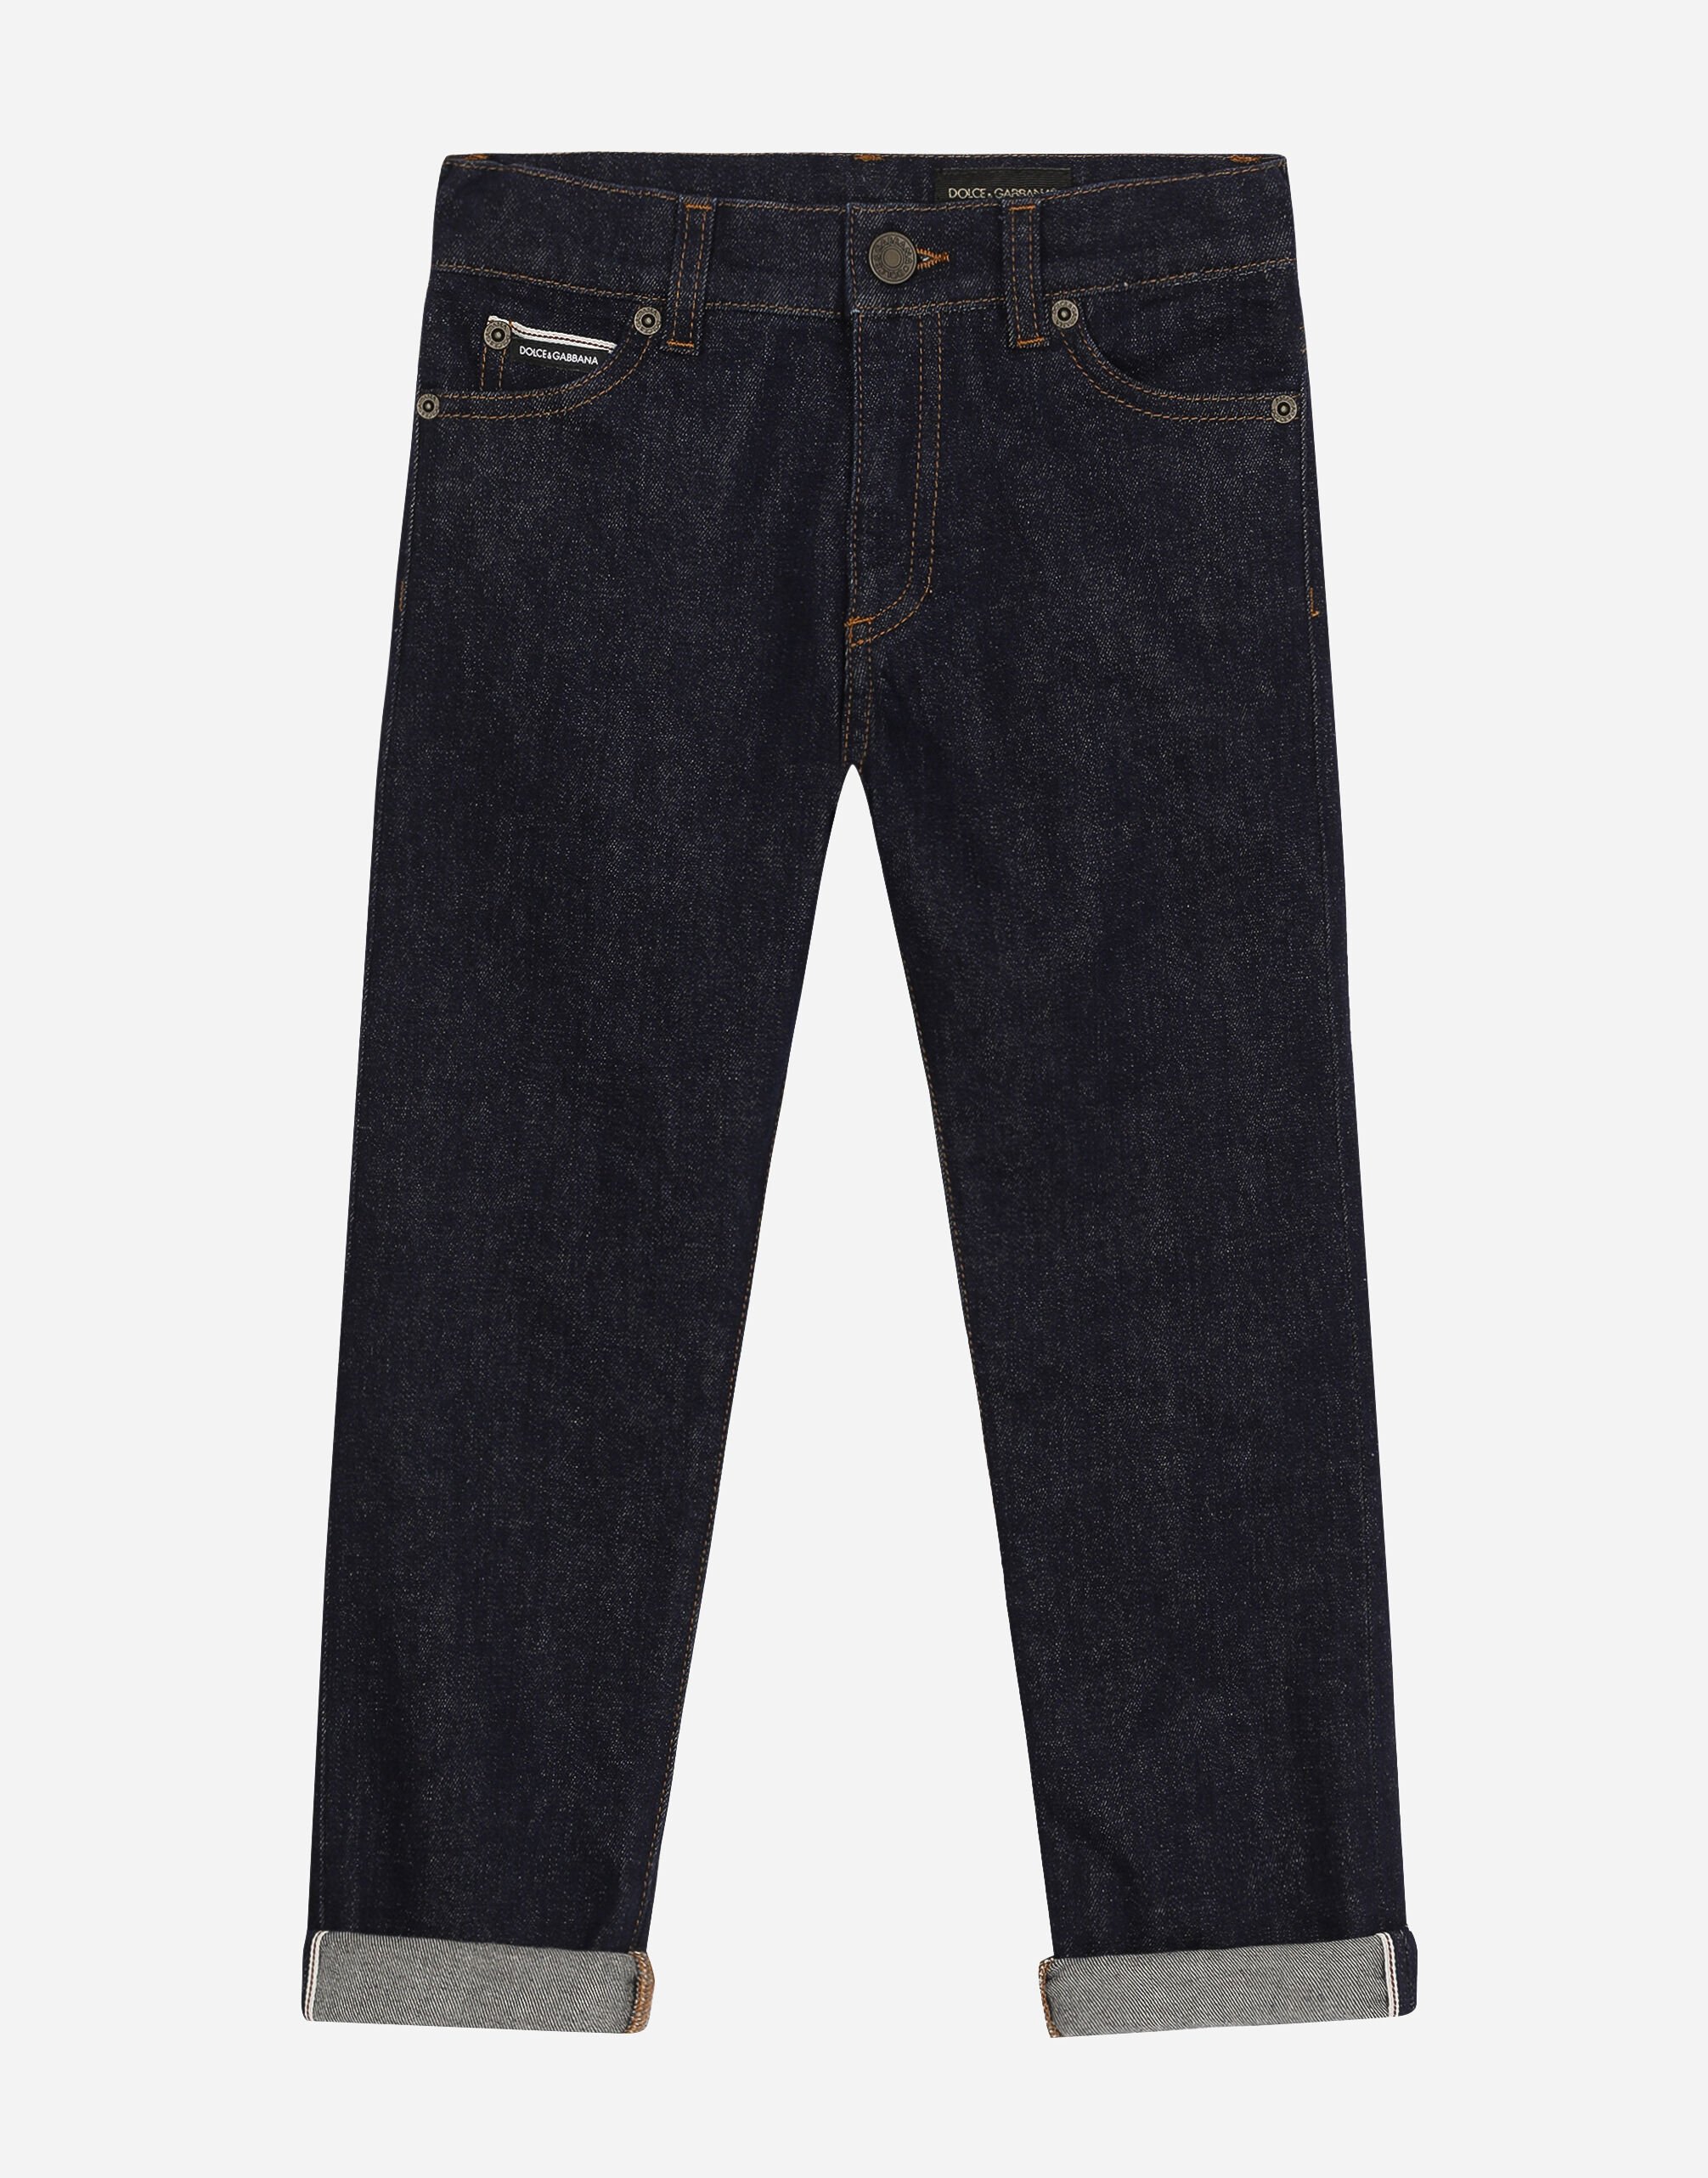 Dolce & Gabbana 5-pocket stretch denim jeans with logo tag Print L4JQT4II7EF